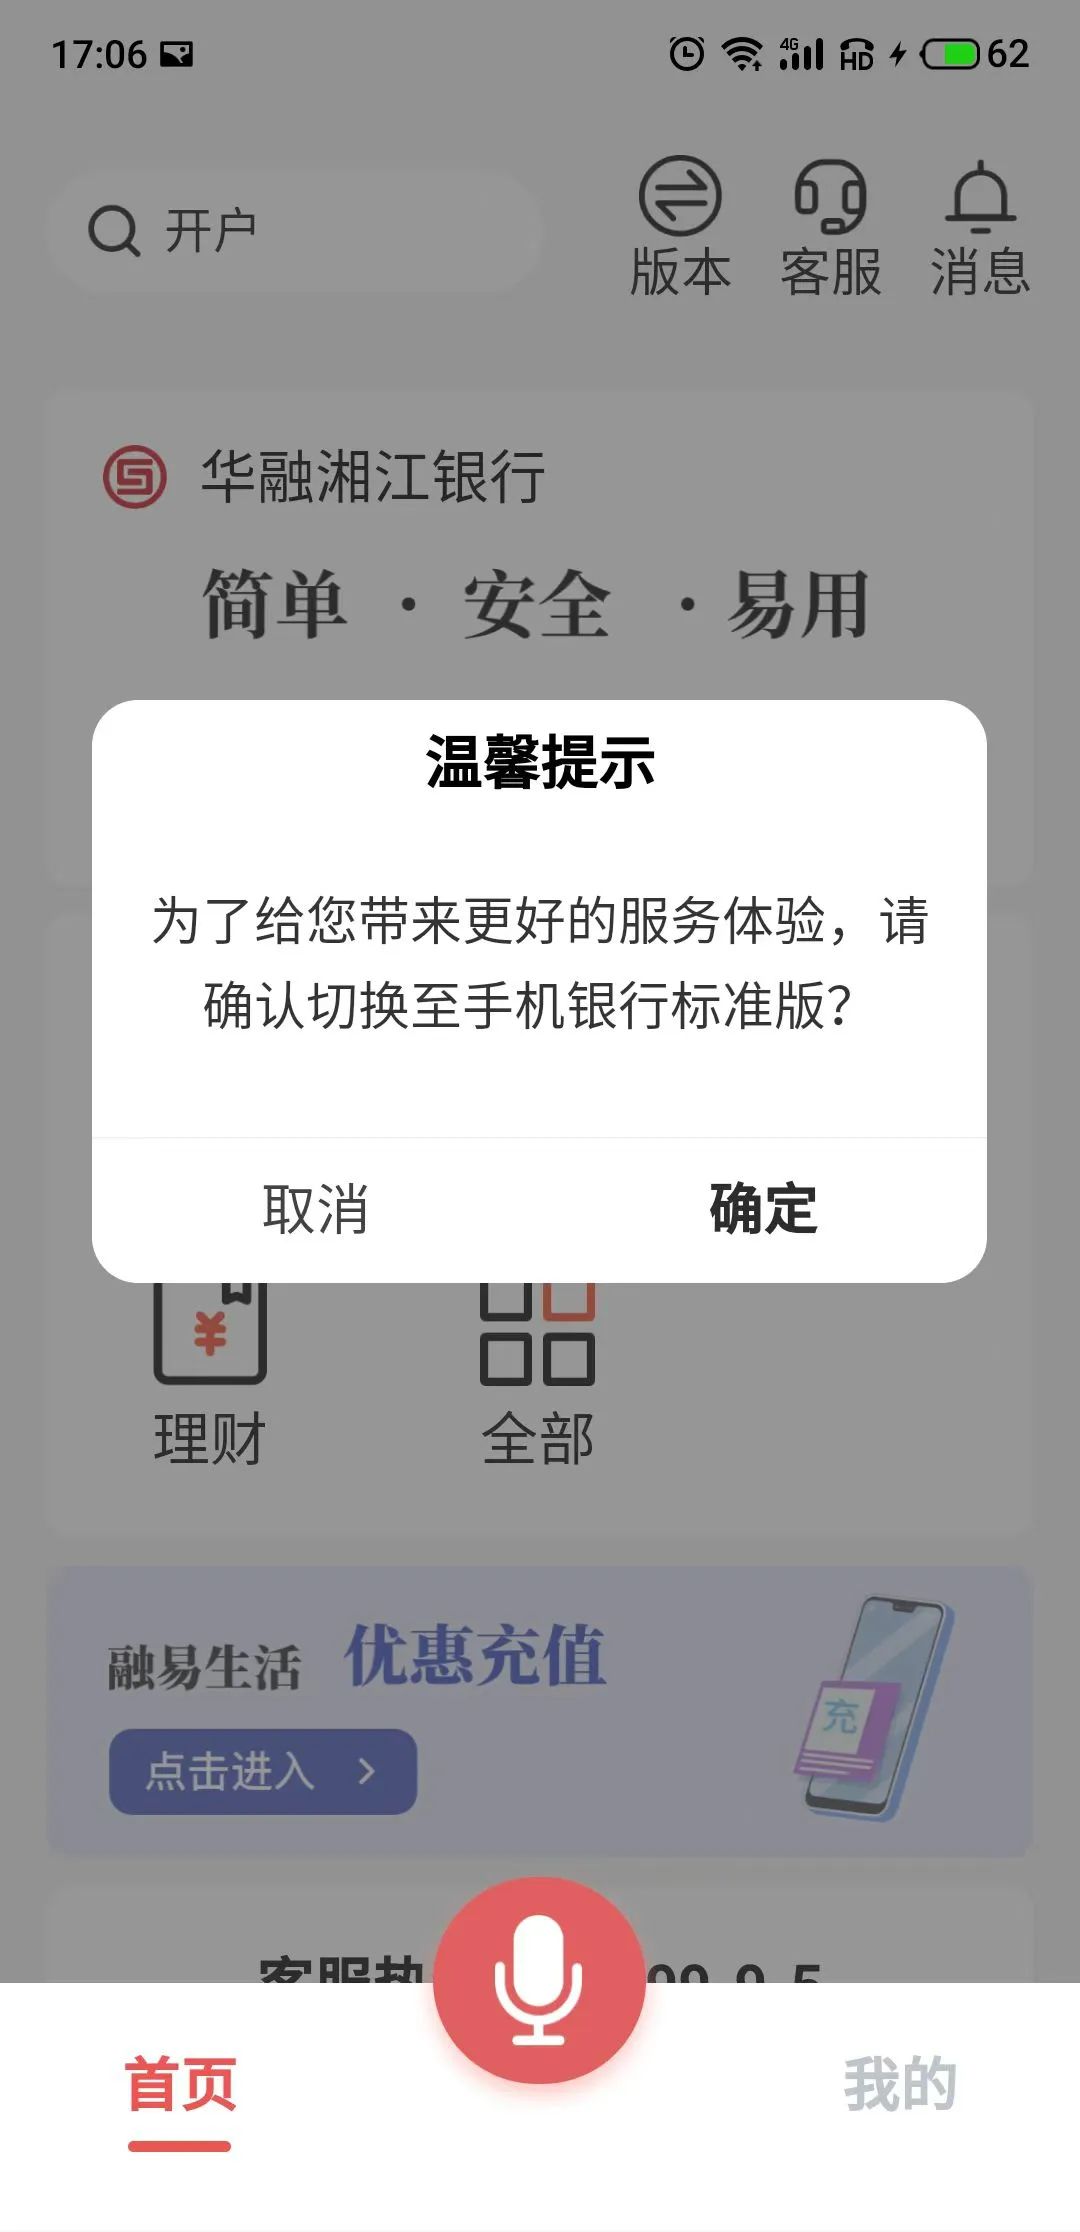 ▲华融湘江银行APP适老化服务功能受限